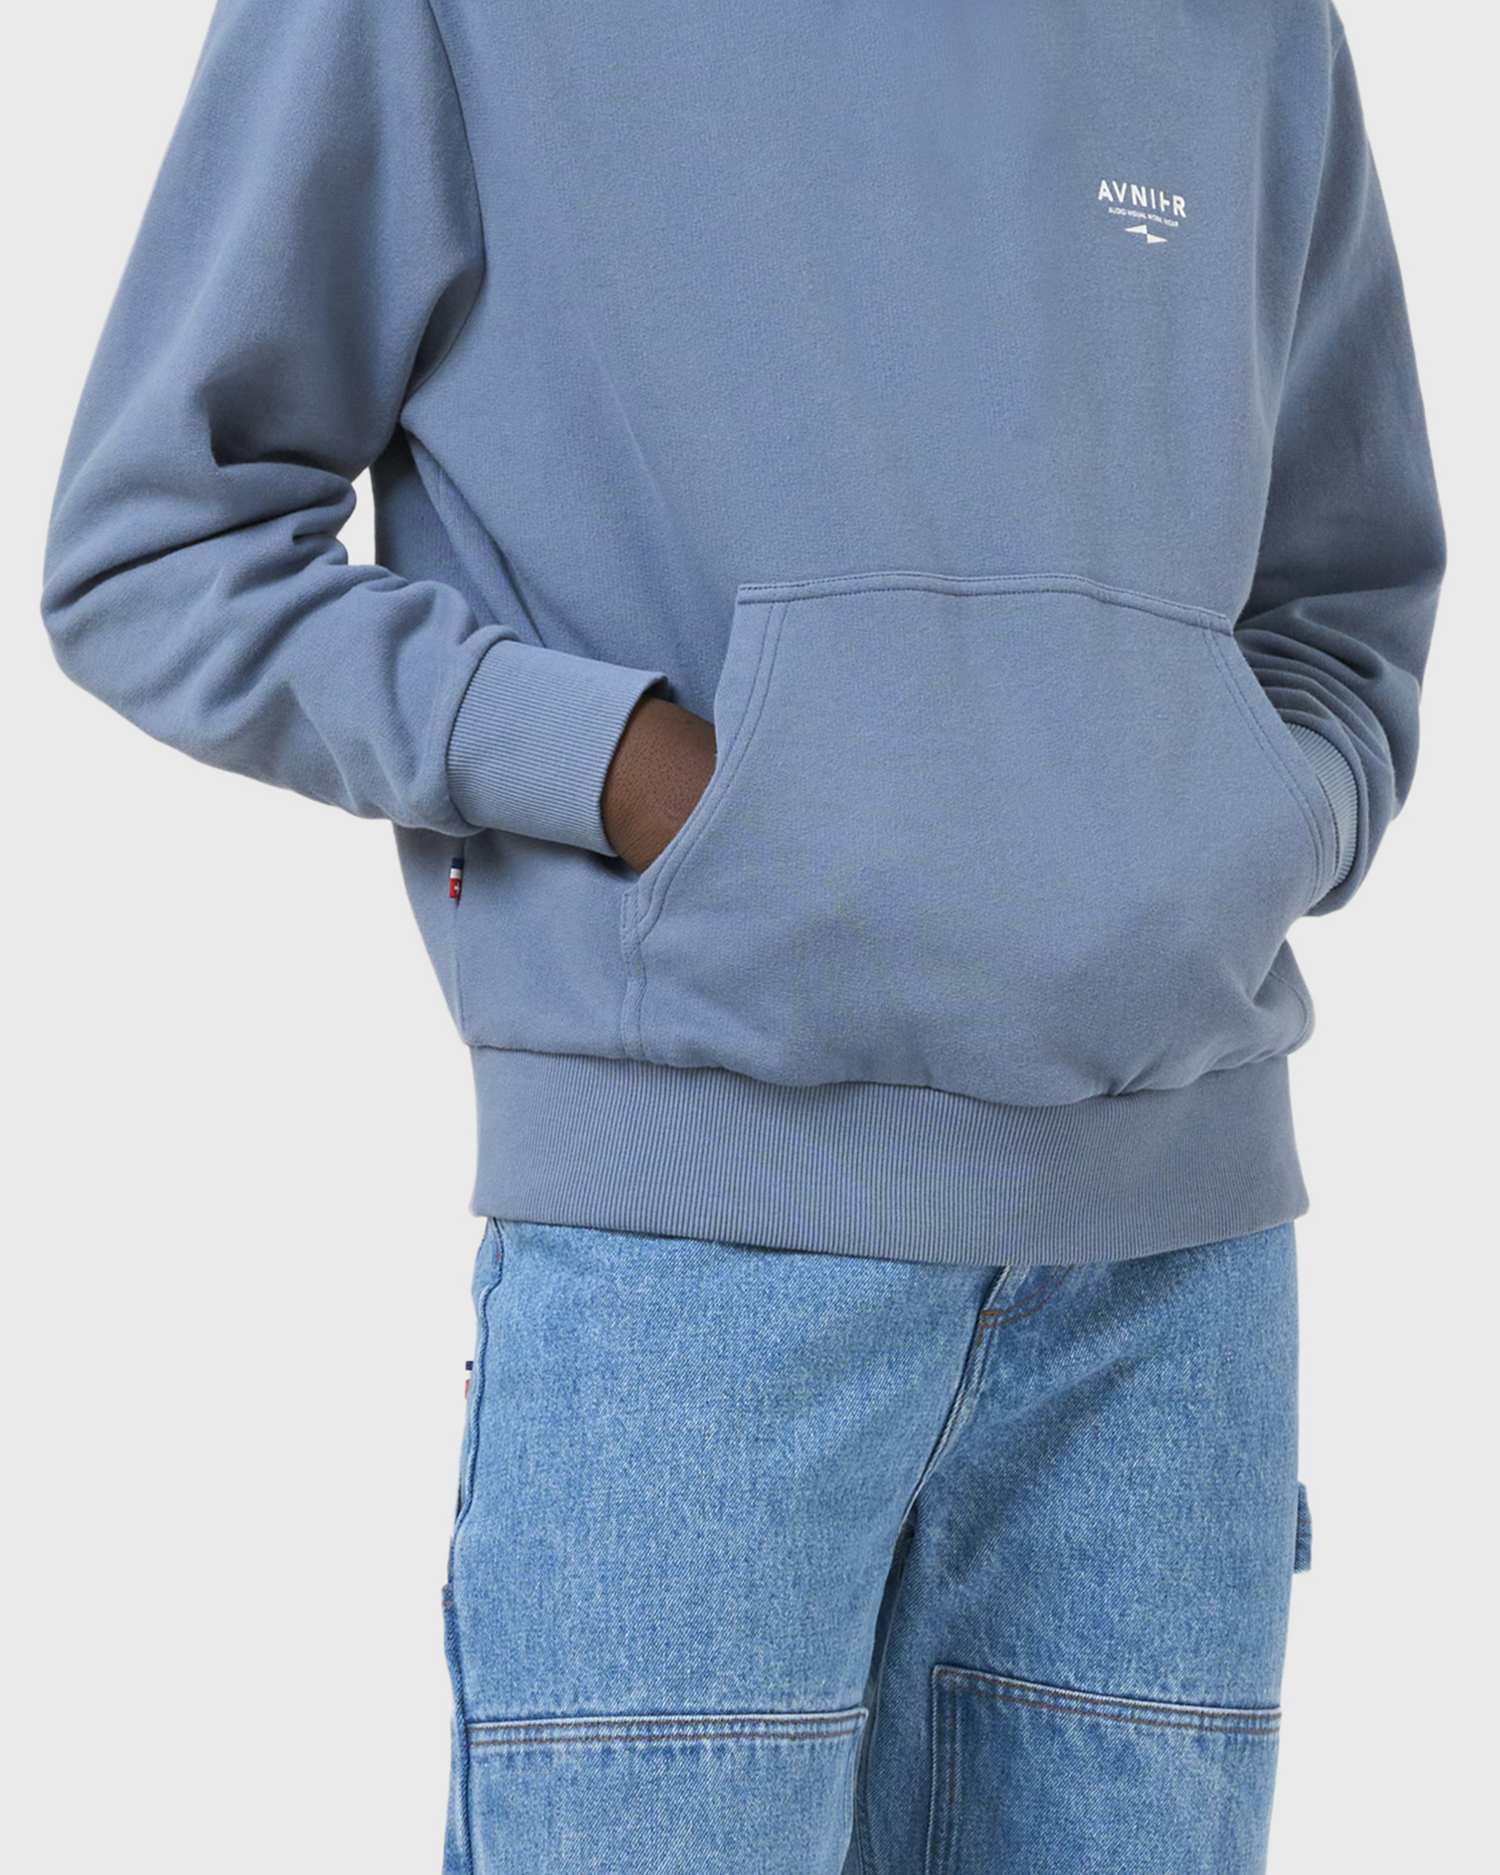 hoodie-onset-bleu-avnier-technicien-3-silhouette-detail - bleu béton